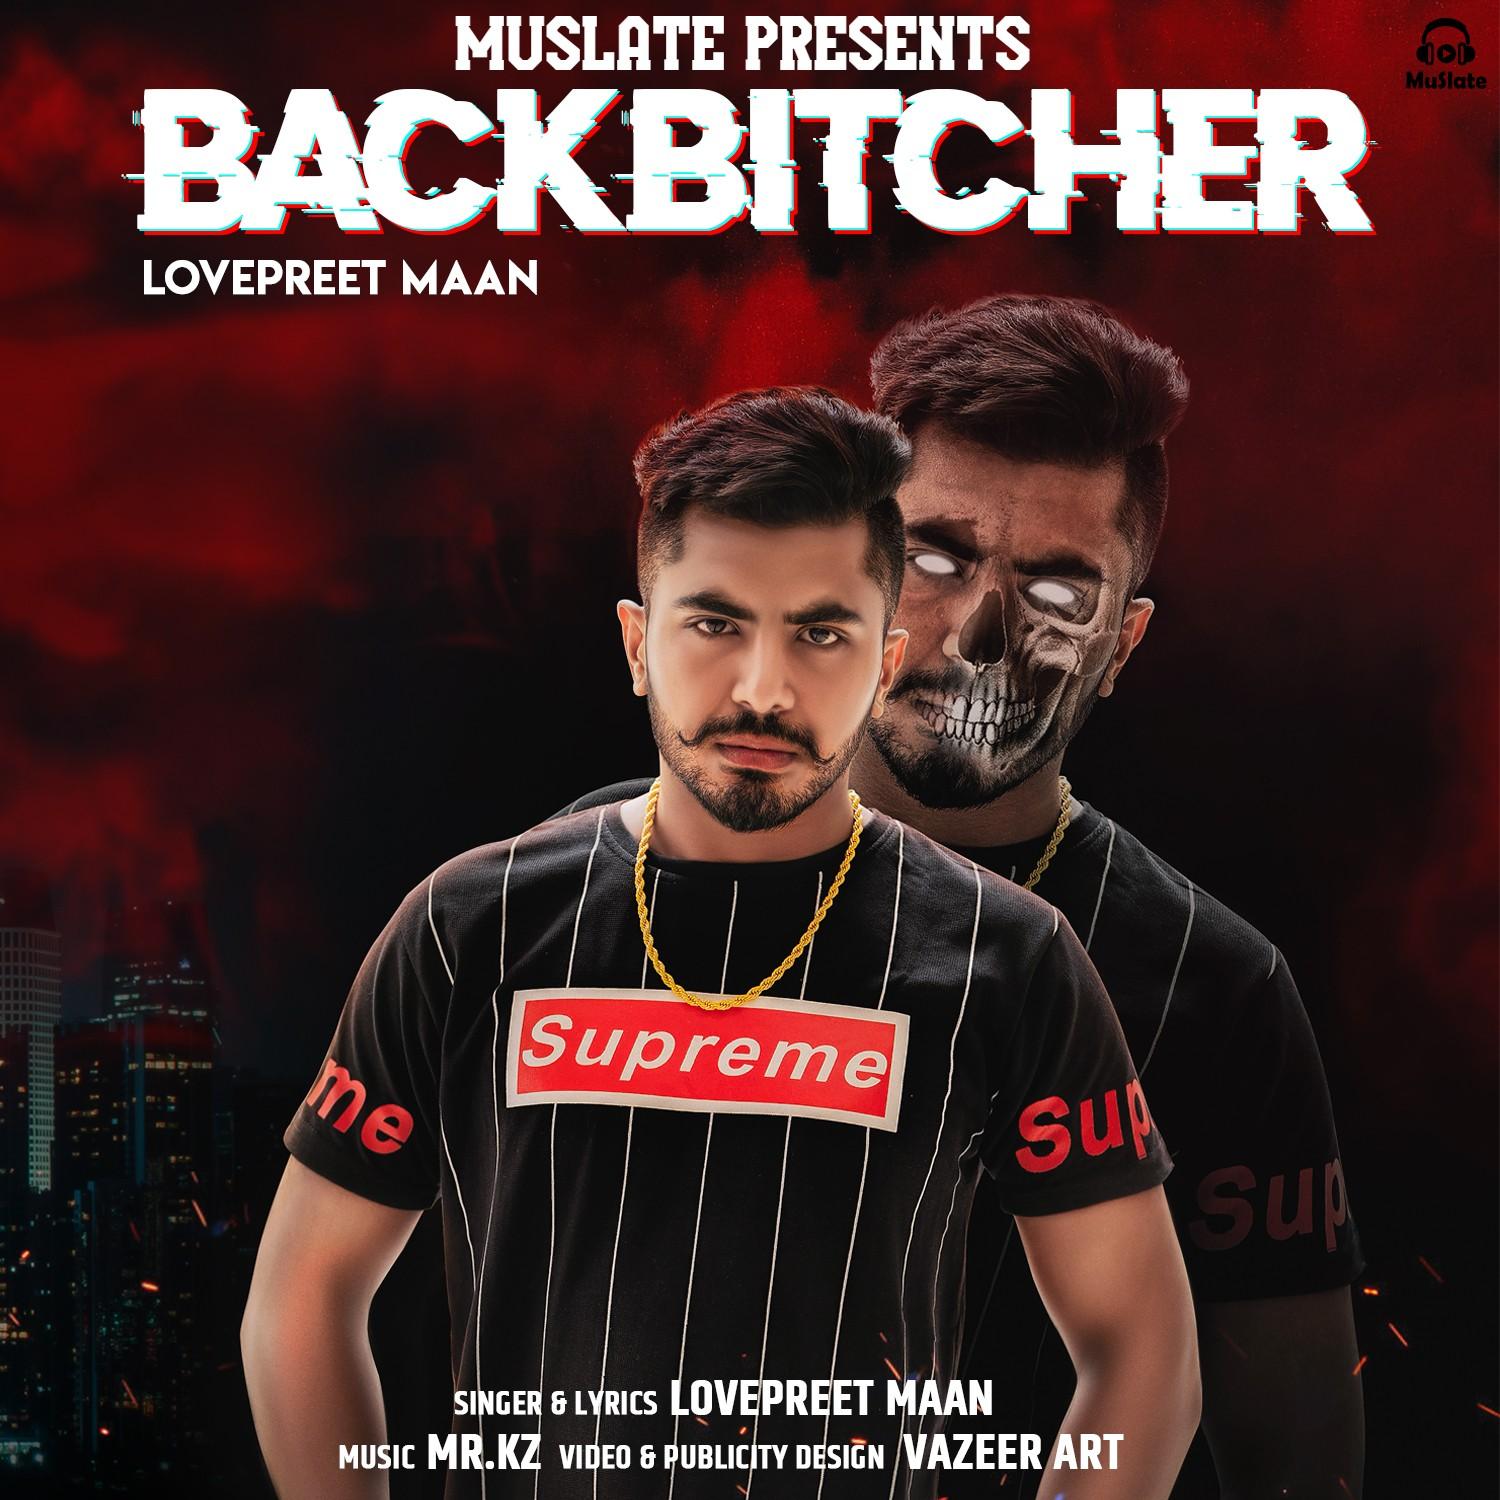 Backbitcher by Lovepreet Maan